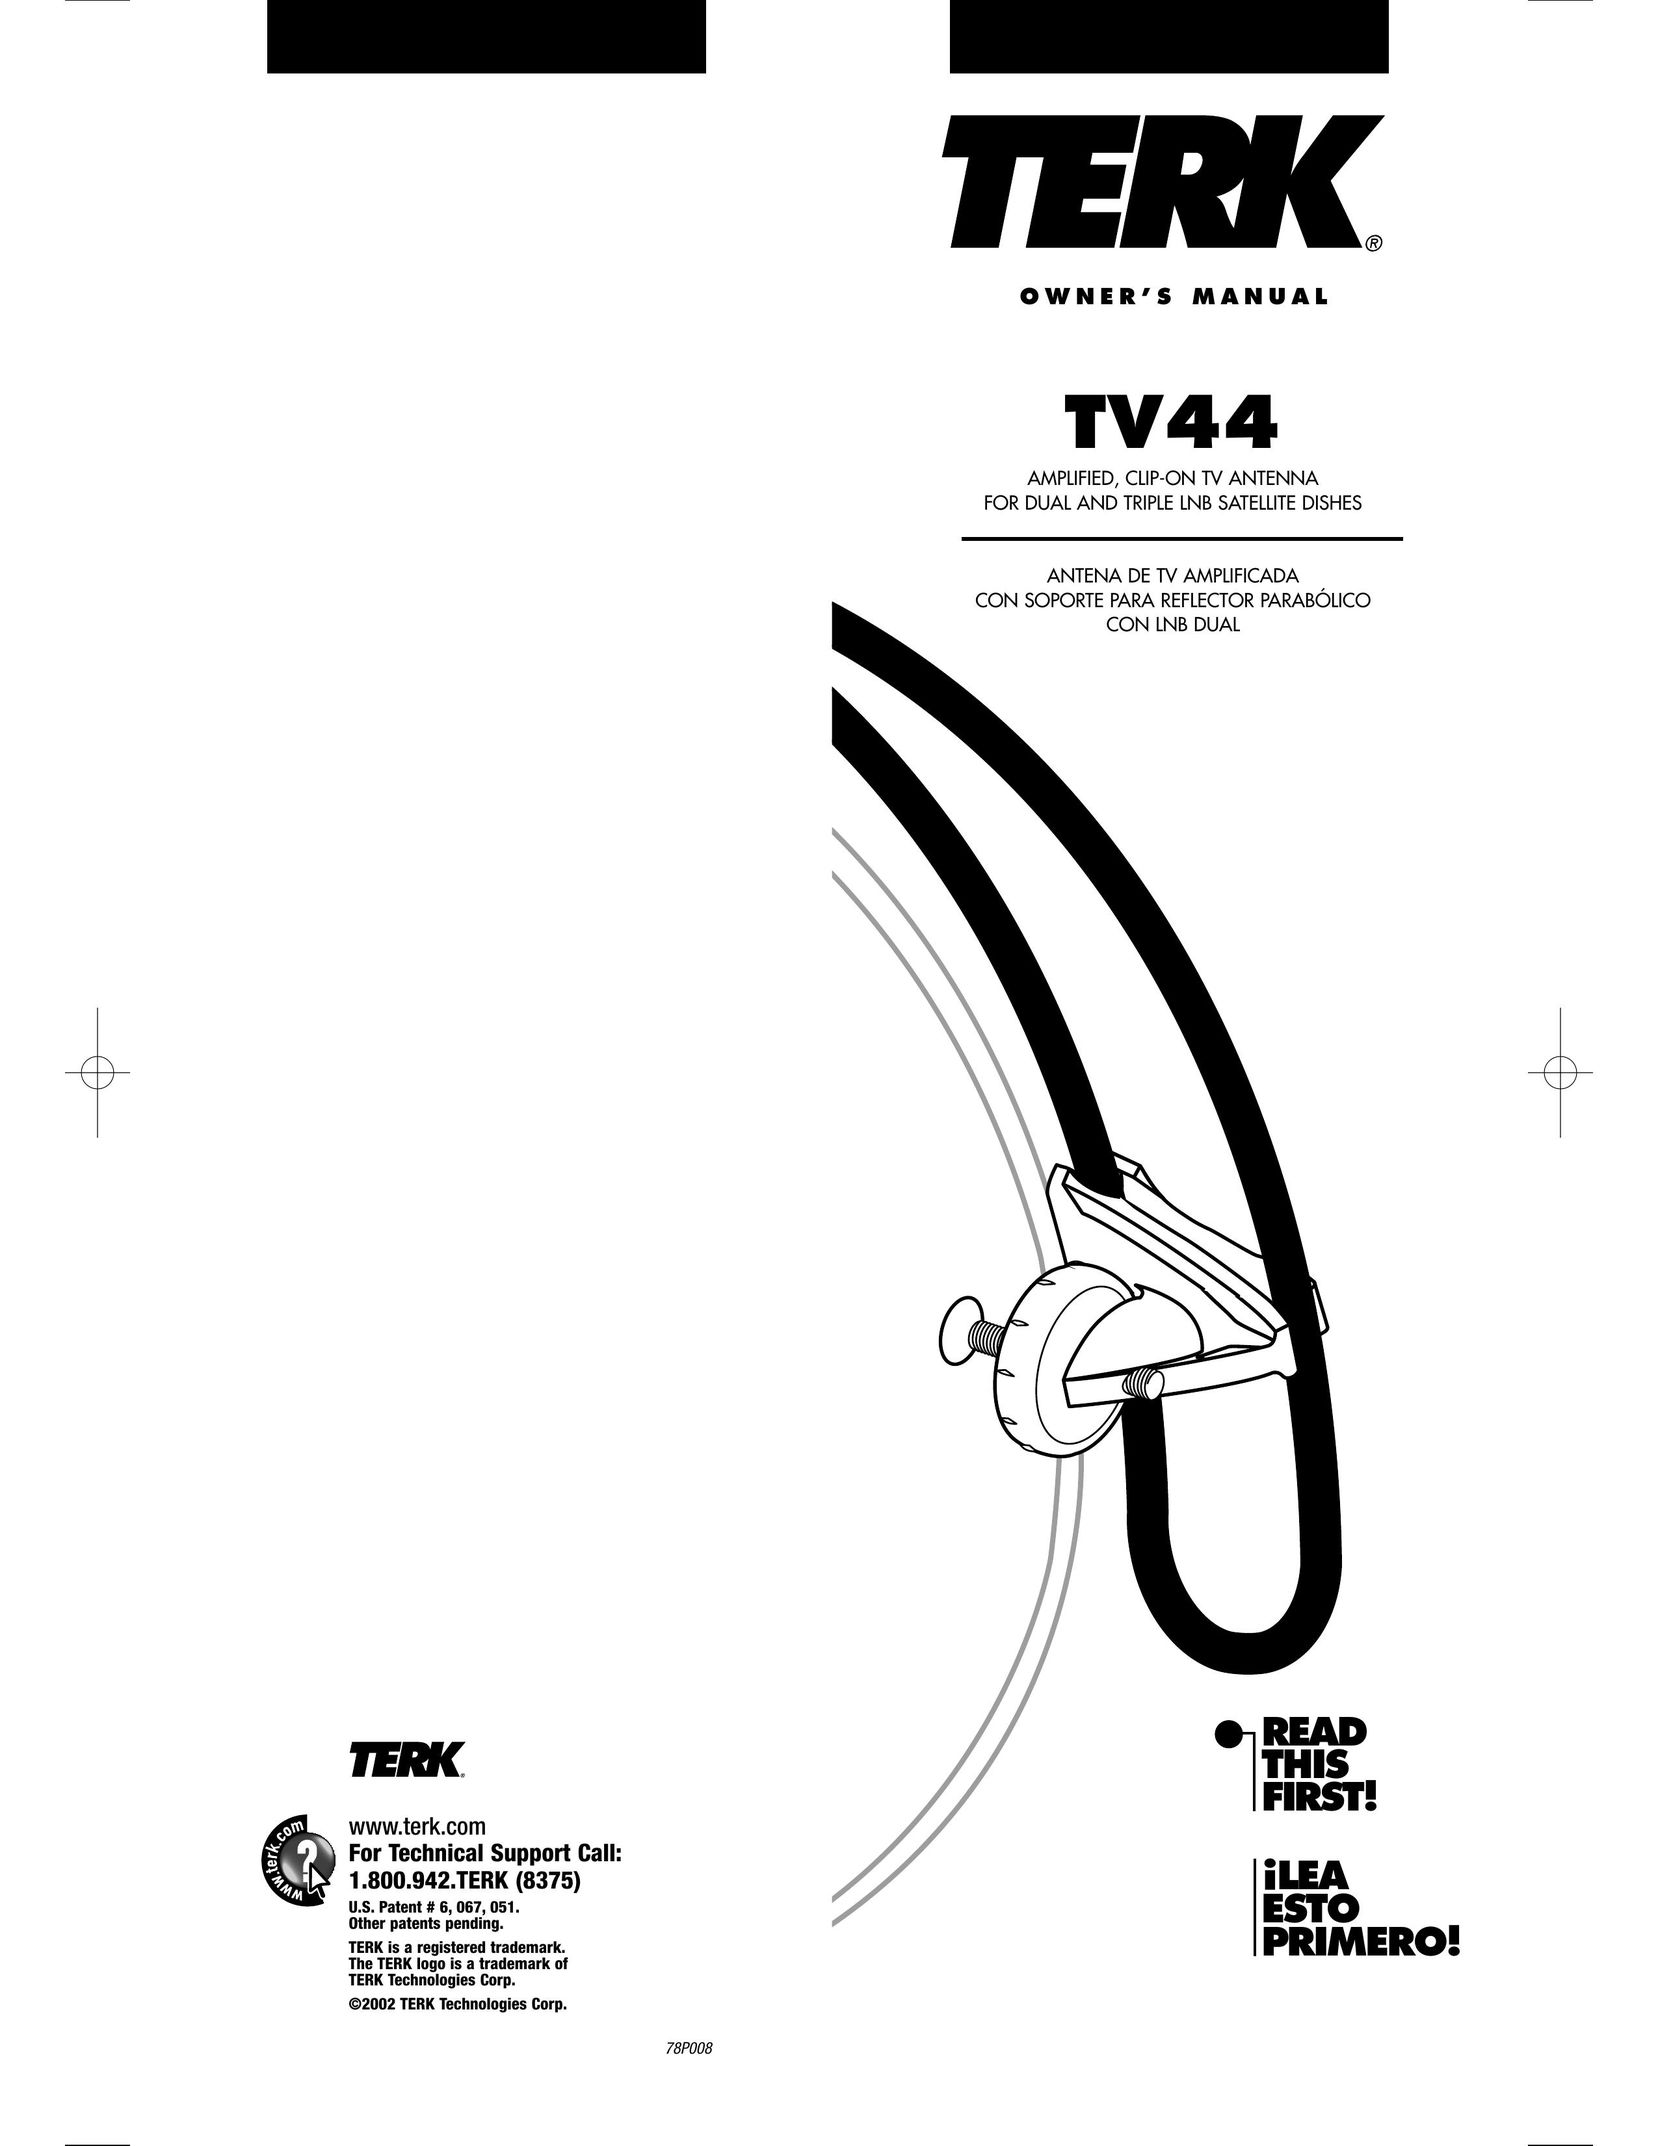 TERK Technologies TV44 Satellite TV System User Manual